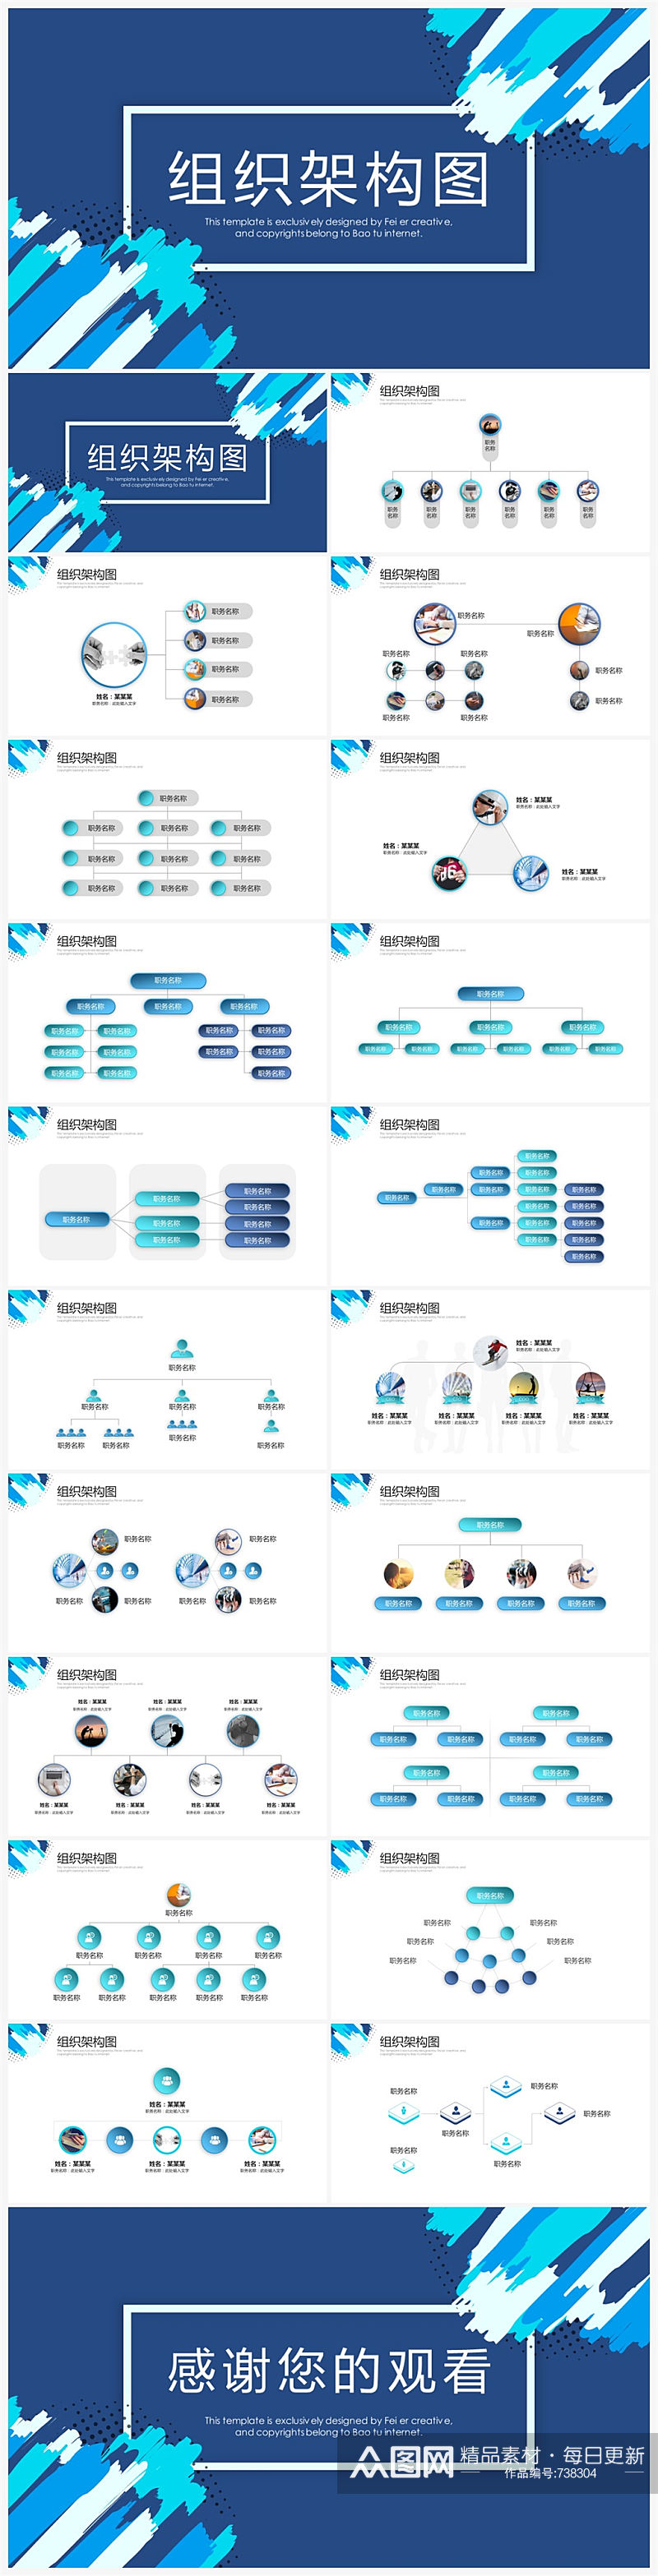 创意蓝色简约企业组织架构图PPT模板素材